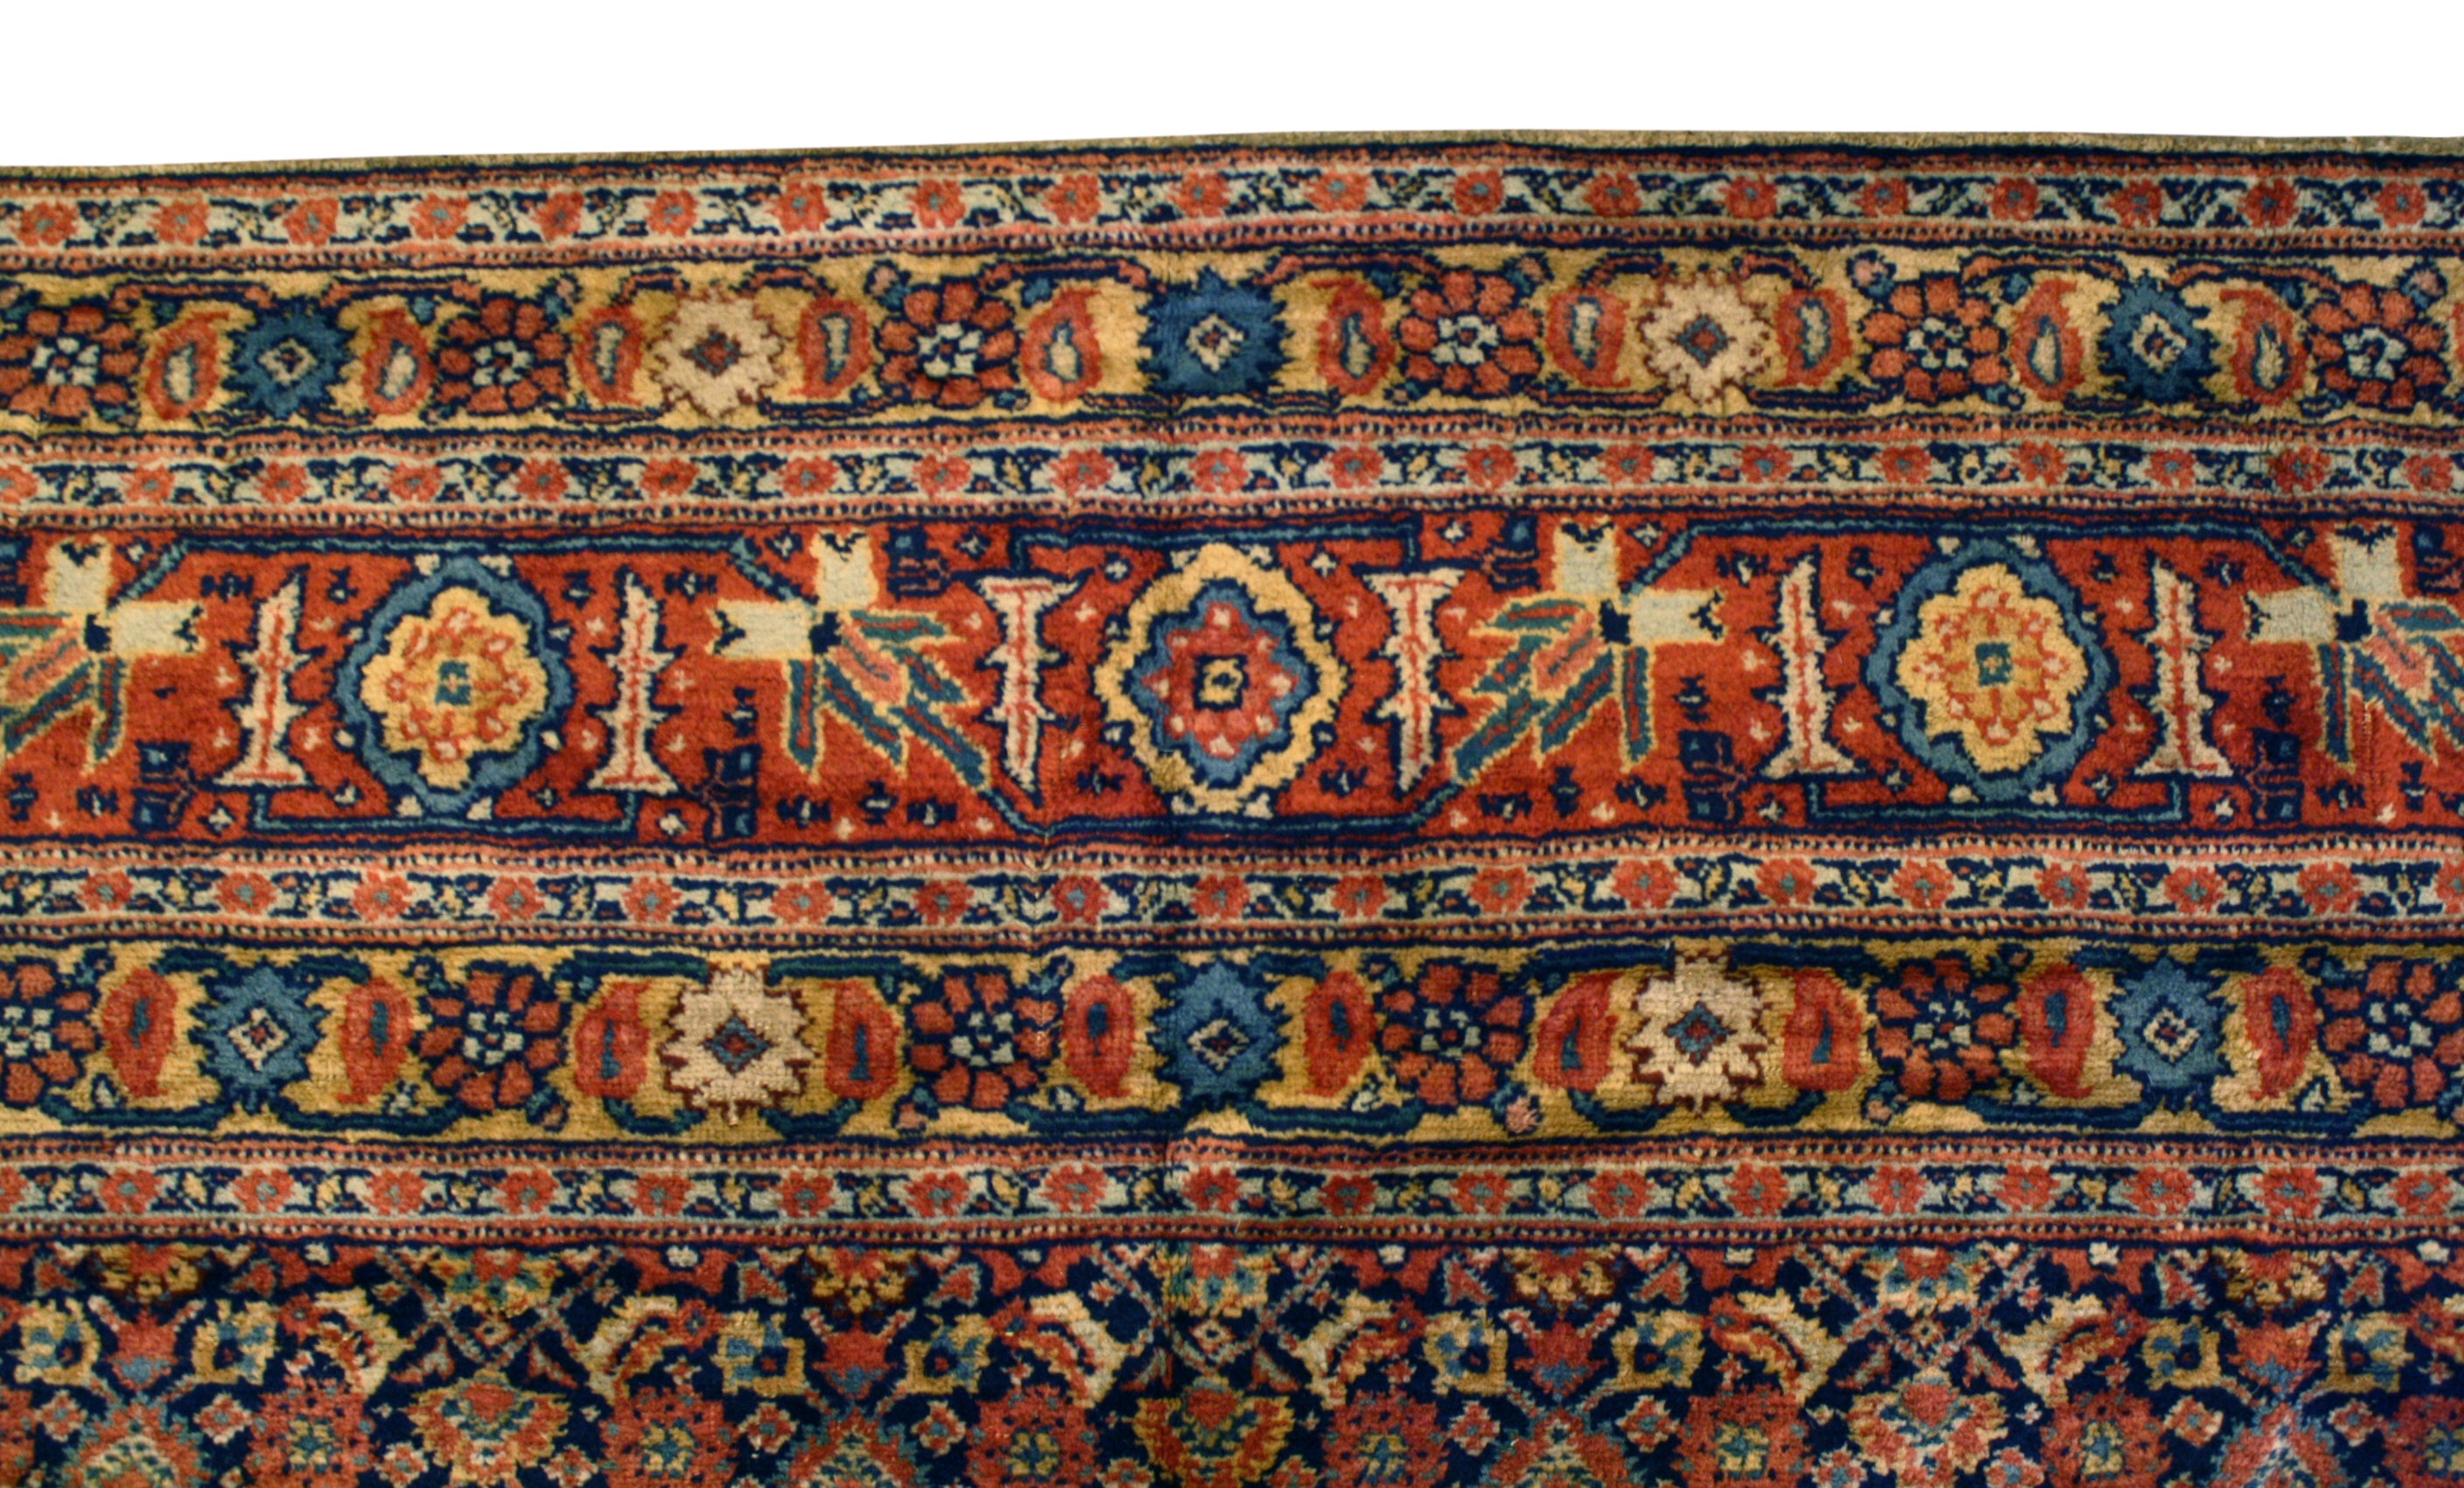 Restored antique Persian rug